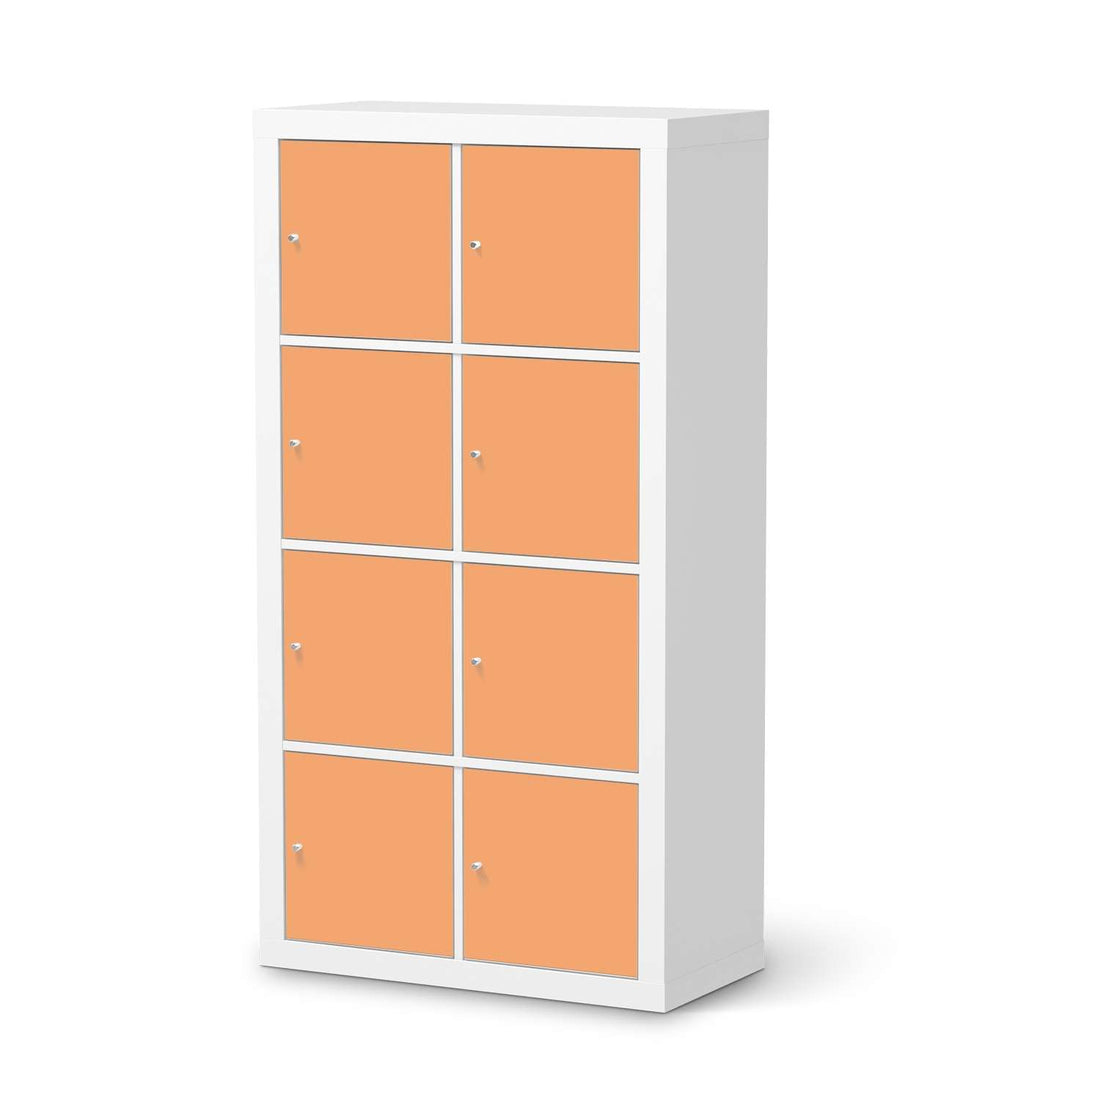 Folie für Möbel Orange Light - IKEA Kallax Regal 8 Türen  - weiss